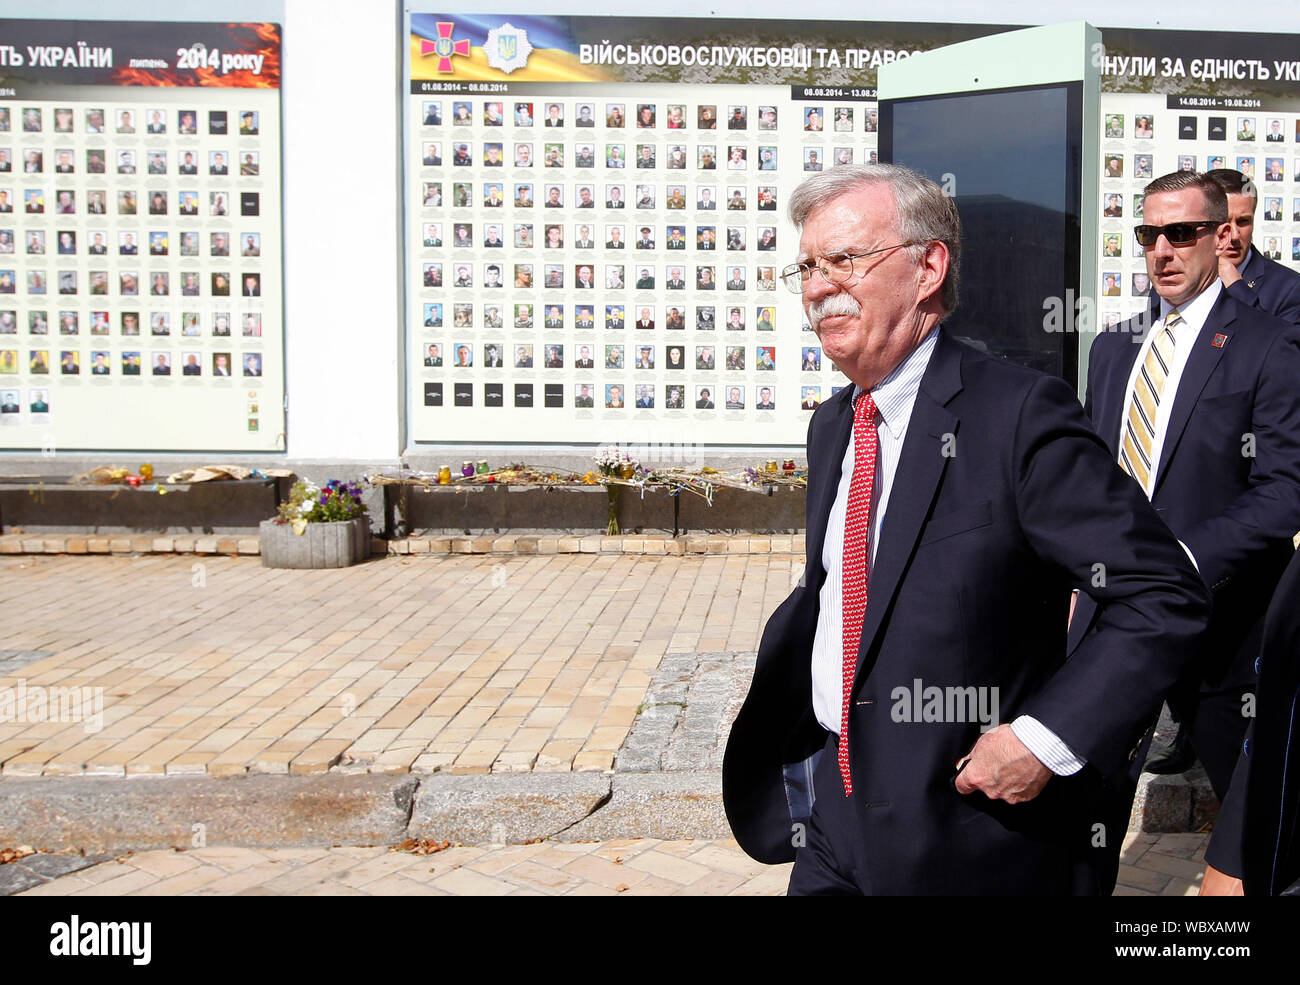 US National Security Advisor John Bolton an der Mauer der Erinnerung für die ukrainischen Soldaten, die im Krieg gegen Russland gestorben - unterstützte Separatisten im Osten des Landes. John Bolton Besuche in der Ukraine. Stockfoto